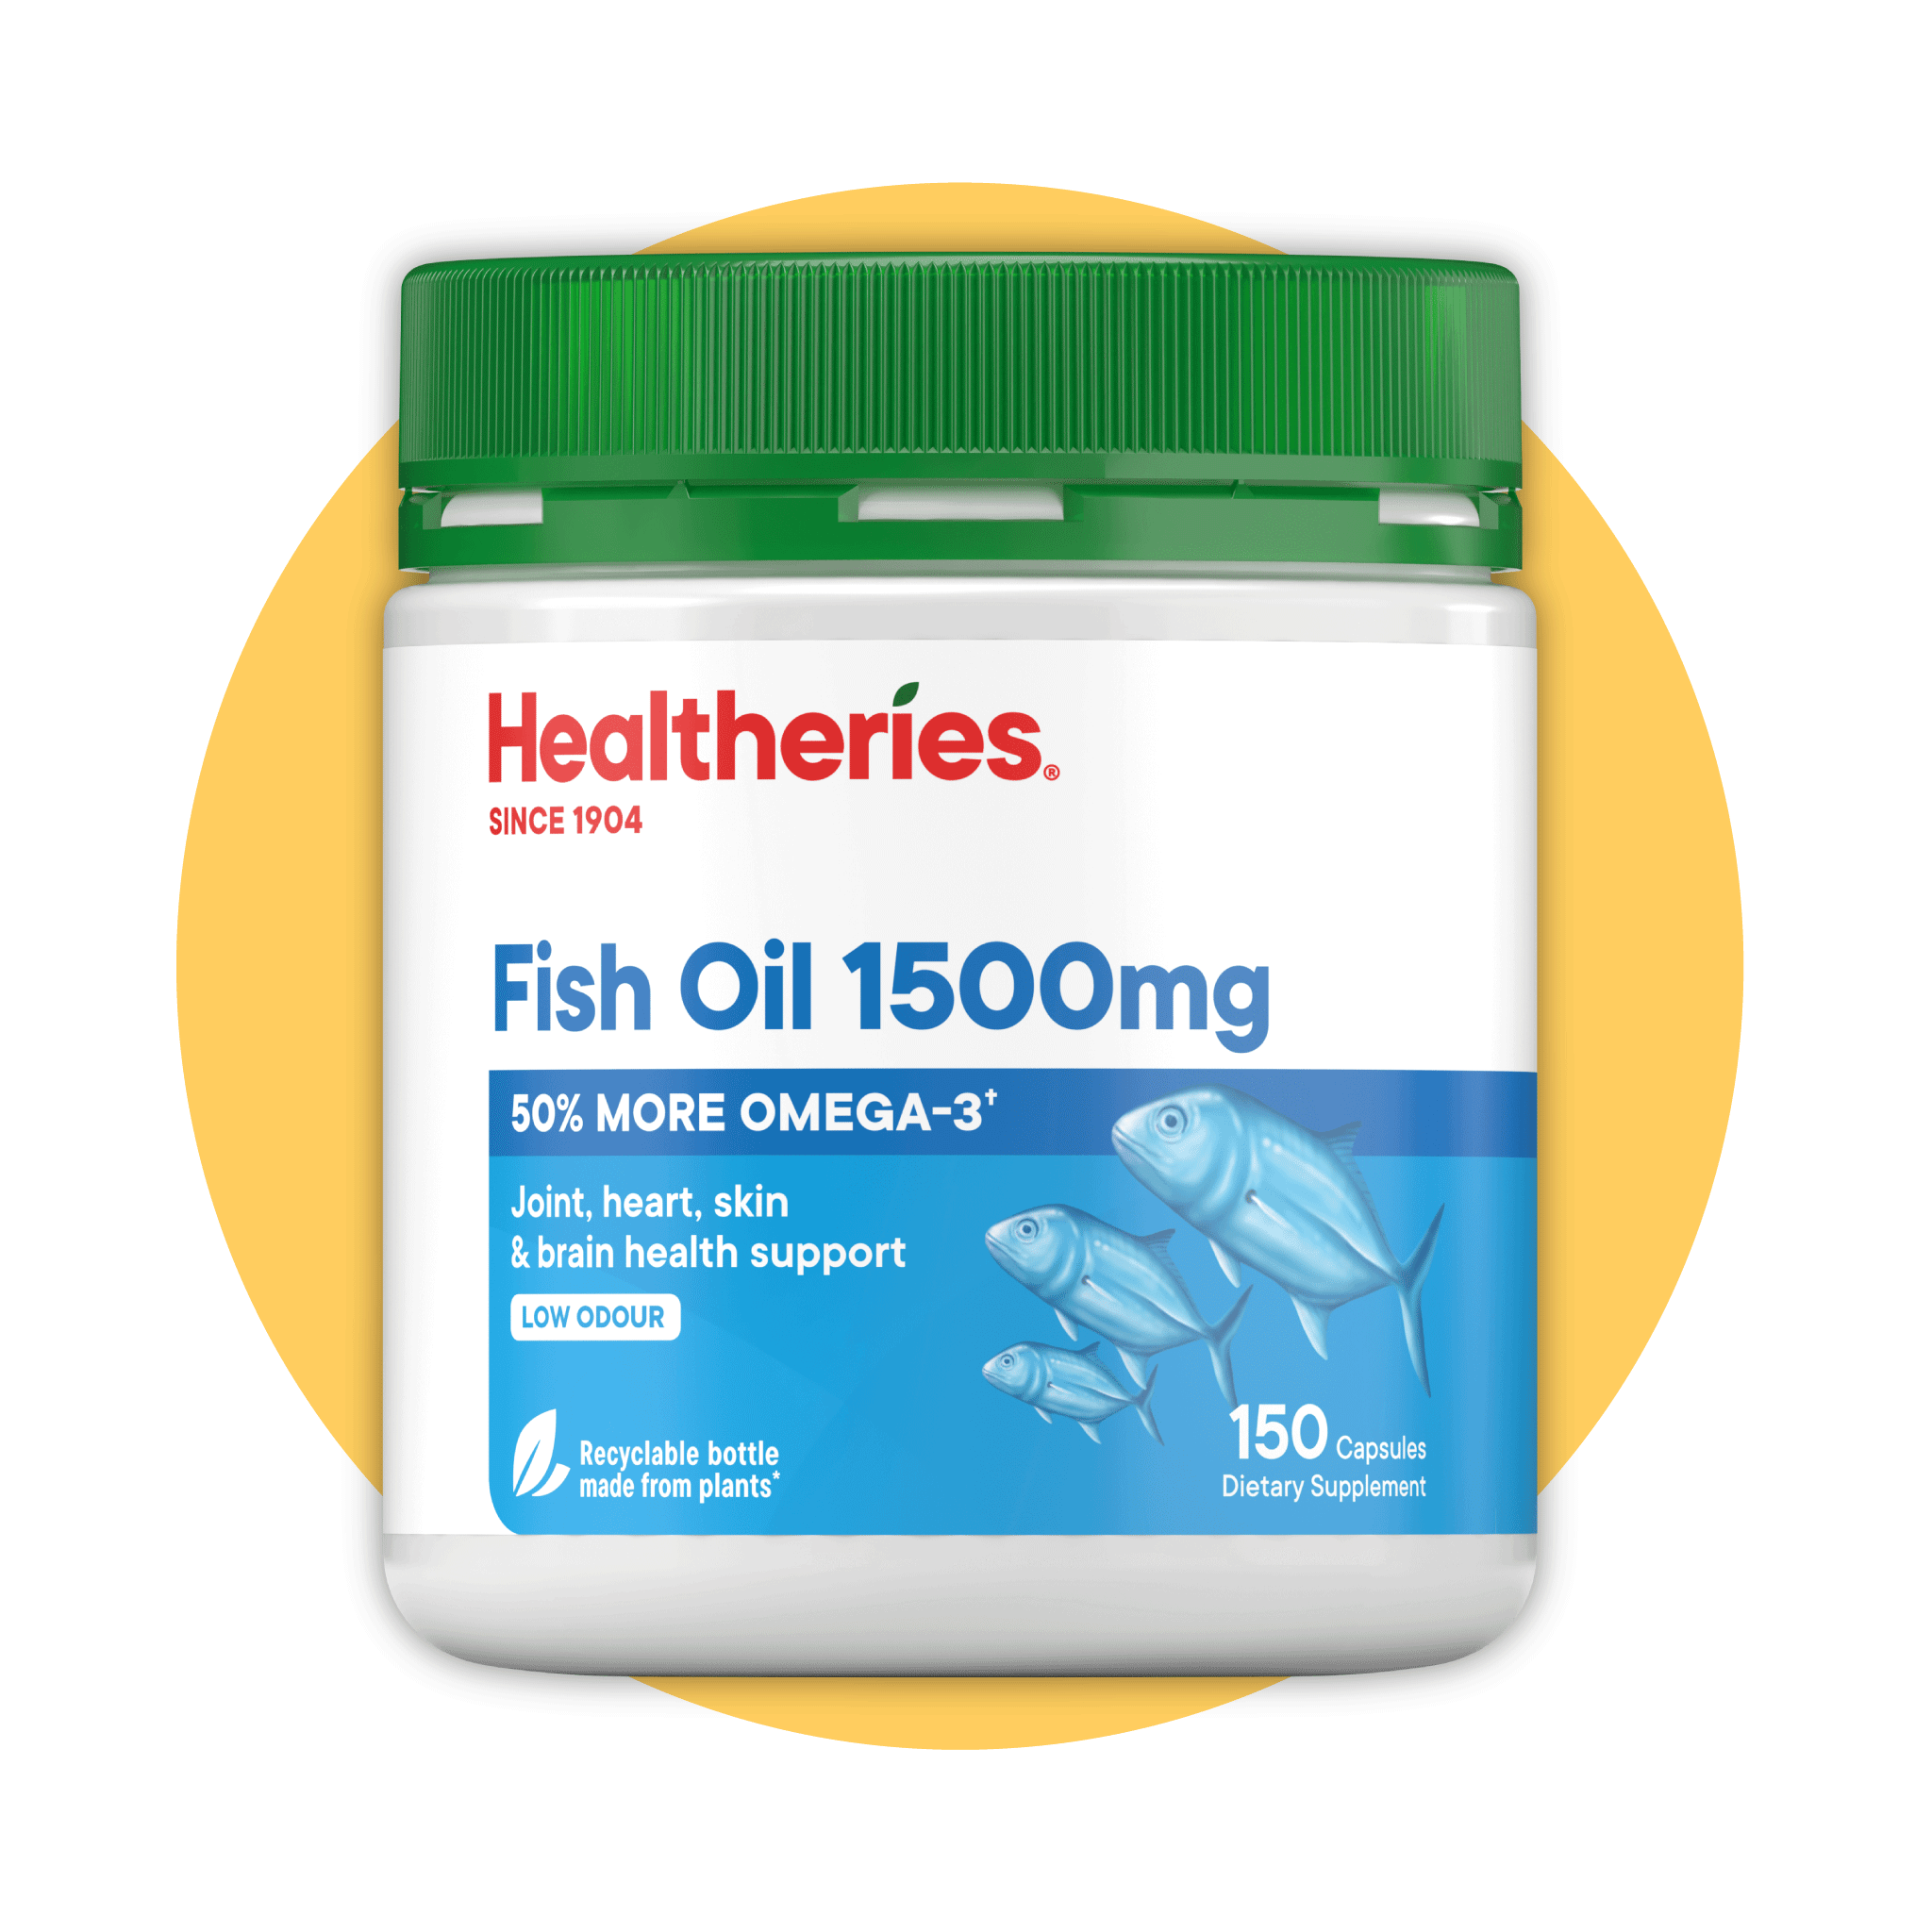 (HAStaff) Healtheries Fish Oil 1500mg 150s - Healtheries Hong Kong